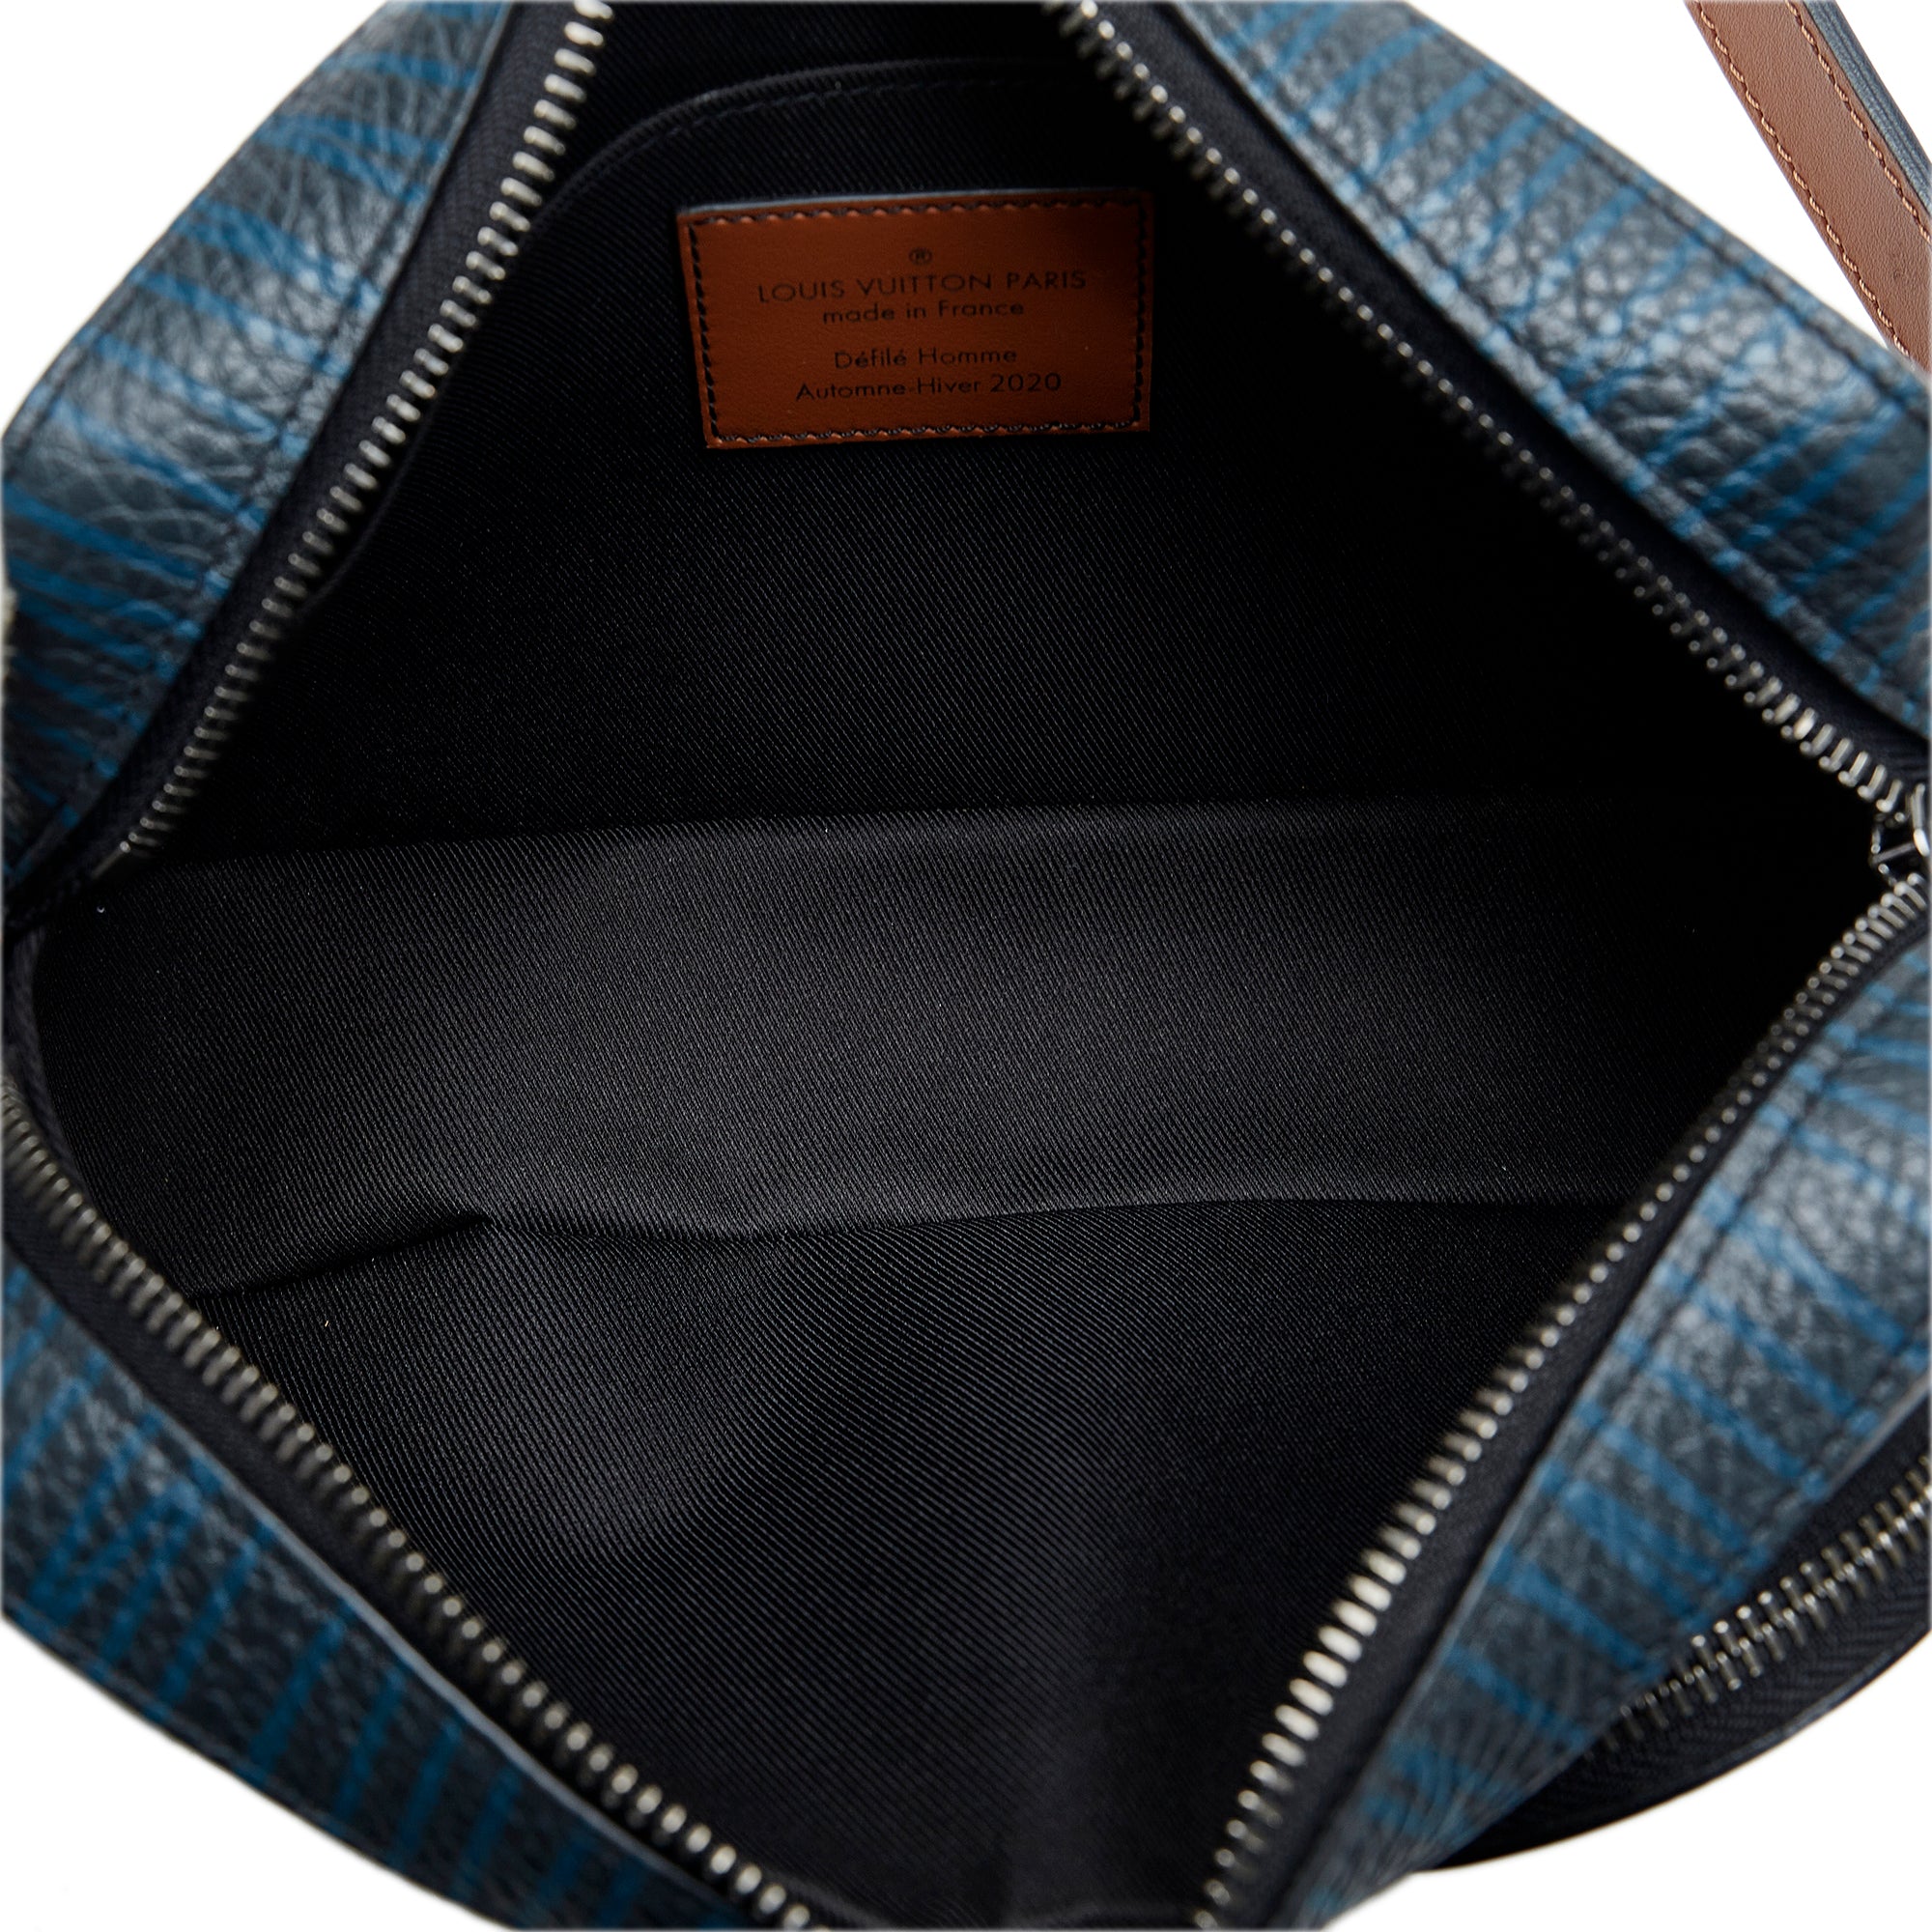 Louis Vuitton Monogram Automne Hiver Bag 